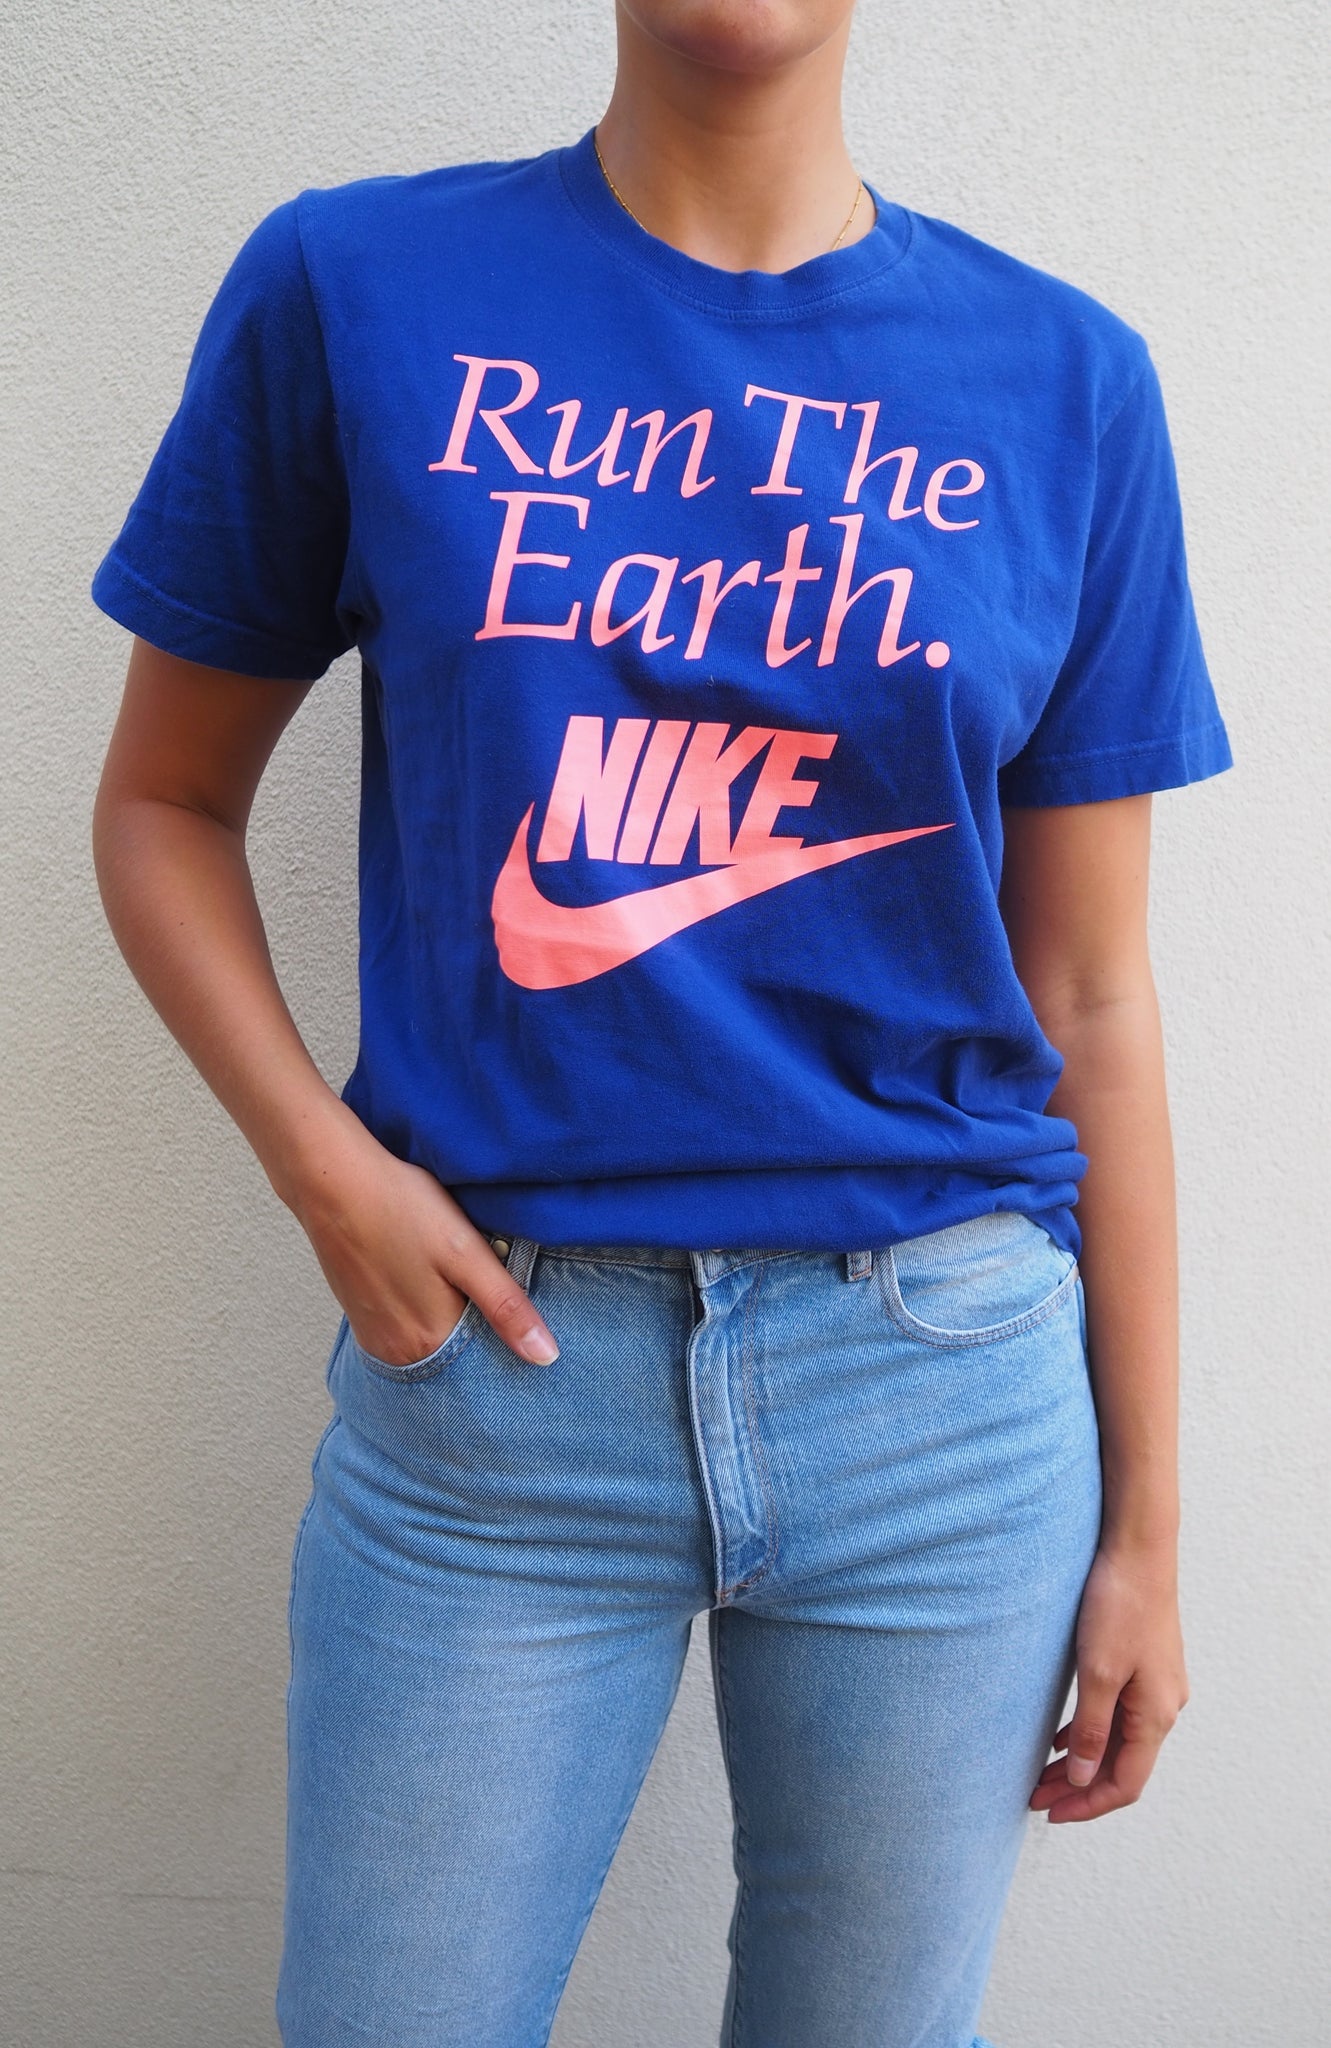 Run The Earth Nike Blue T-shirt